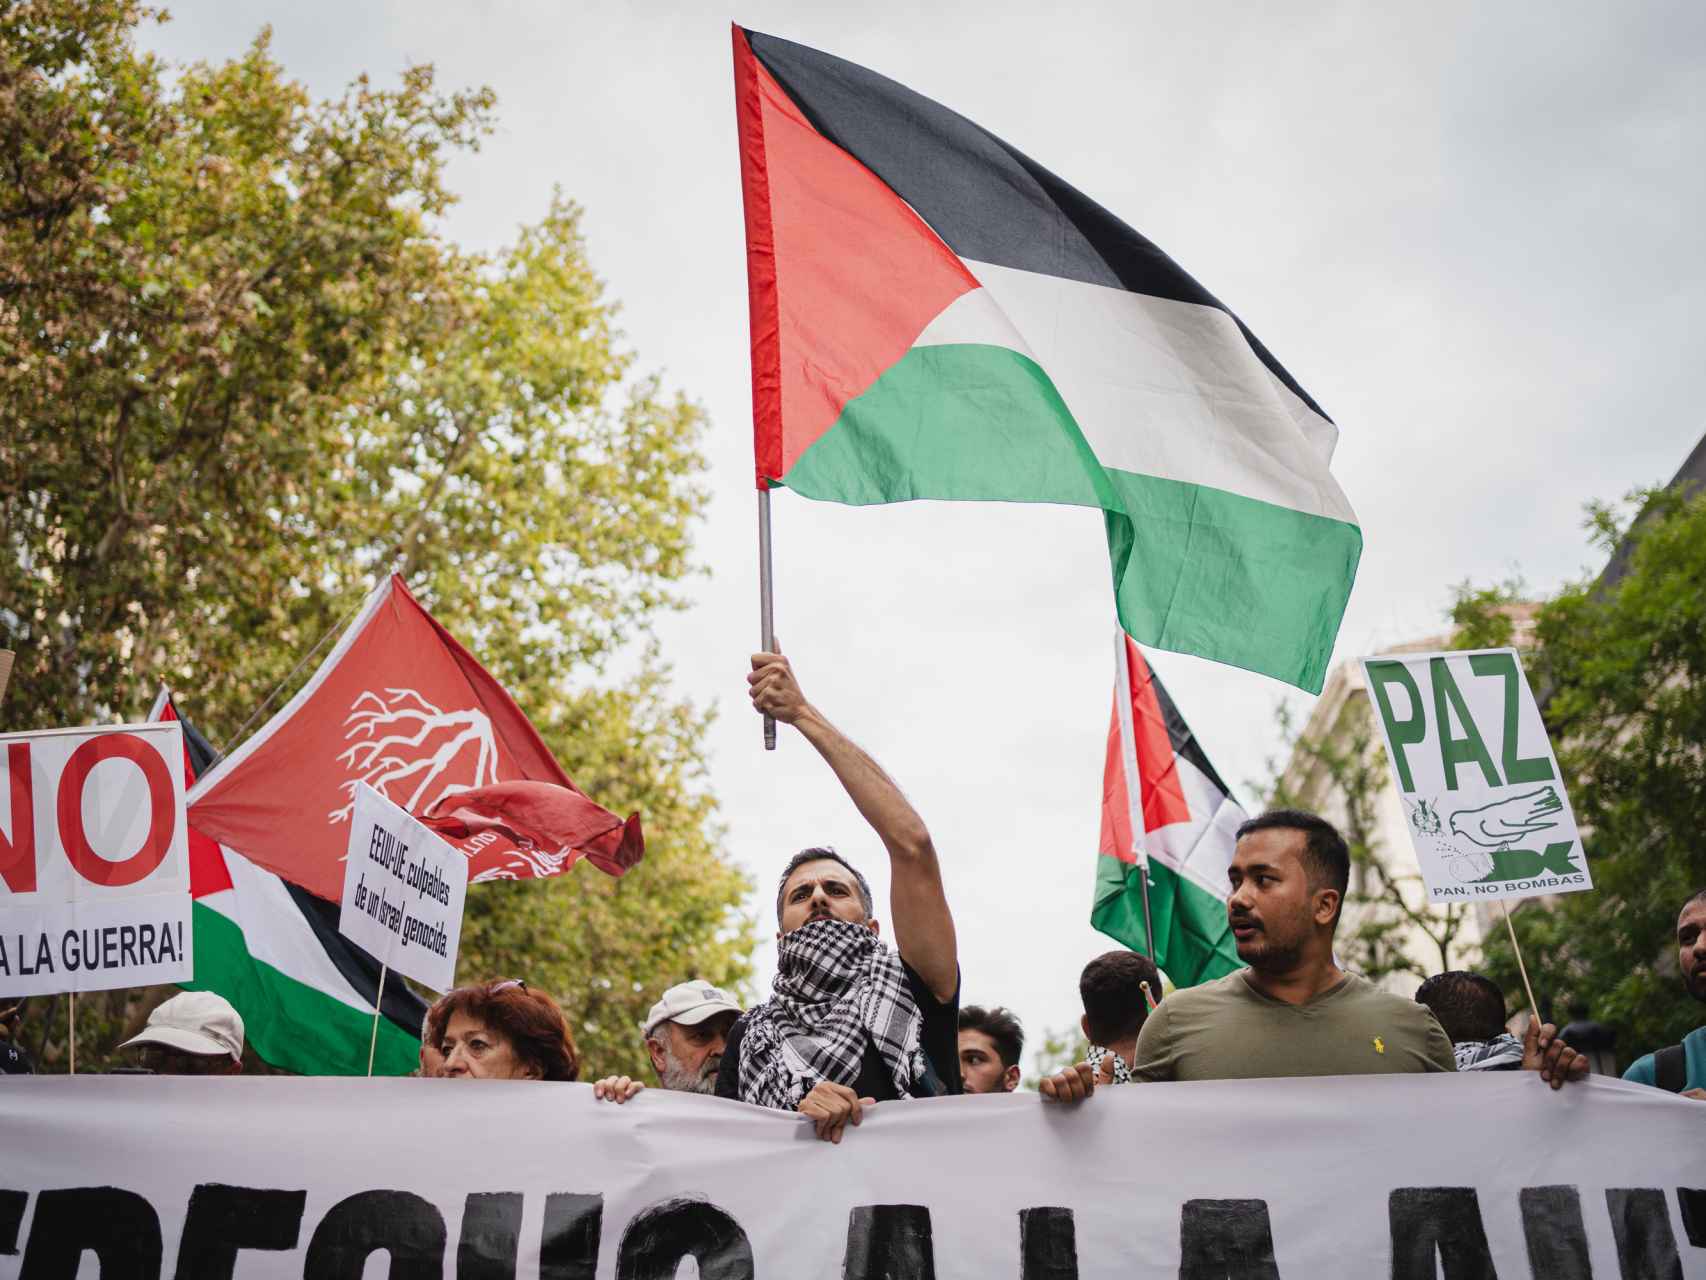 Las imagenes de la manifestación de Madrid en apoyo al pueblo palestino